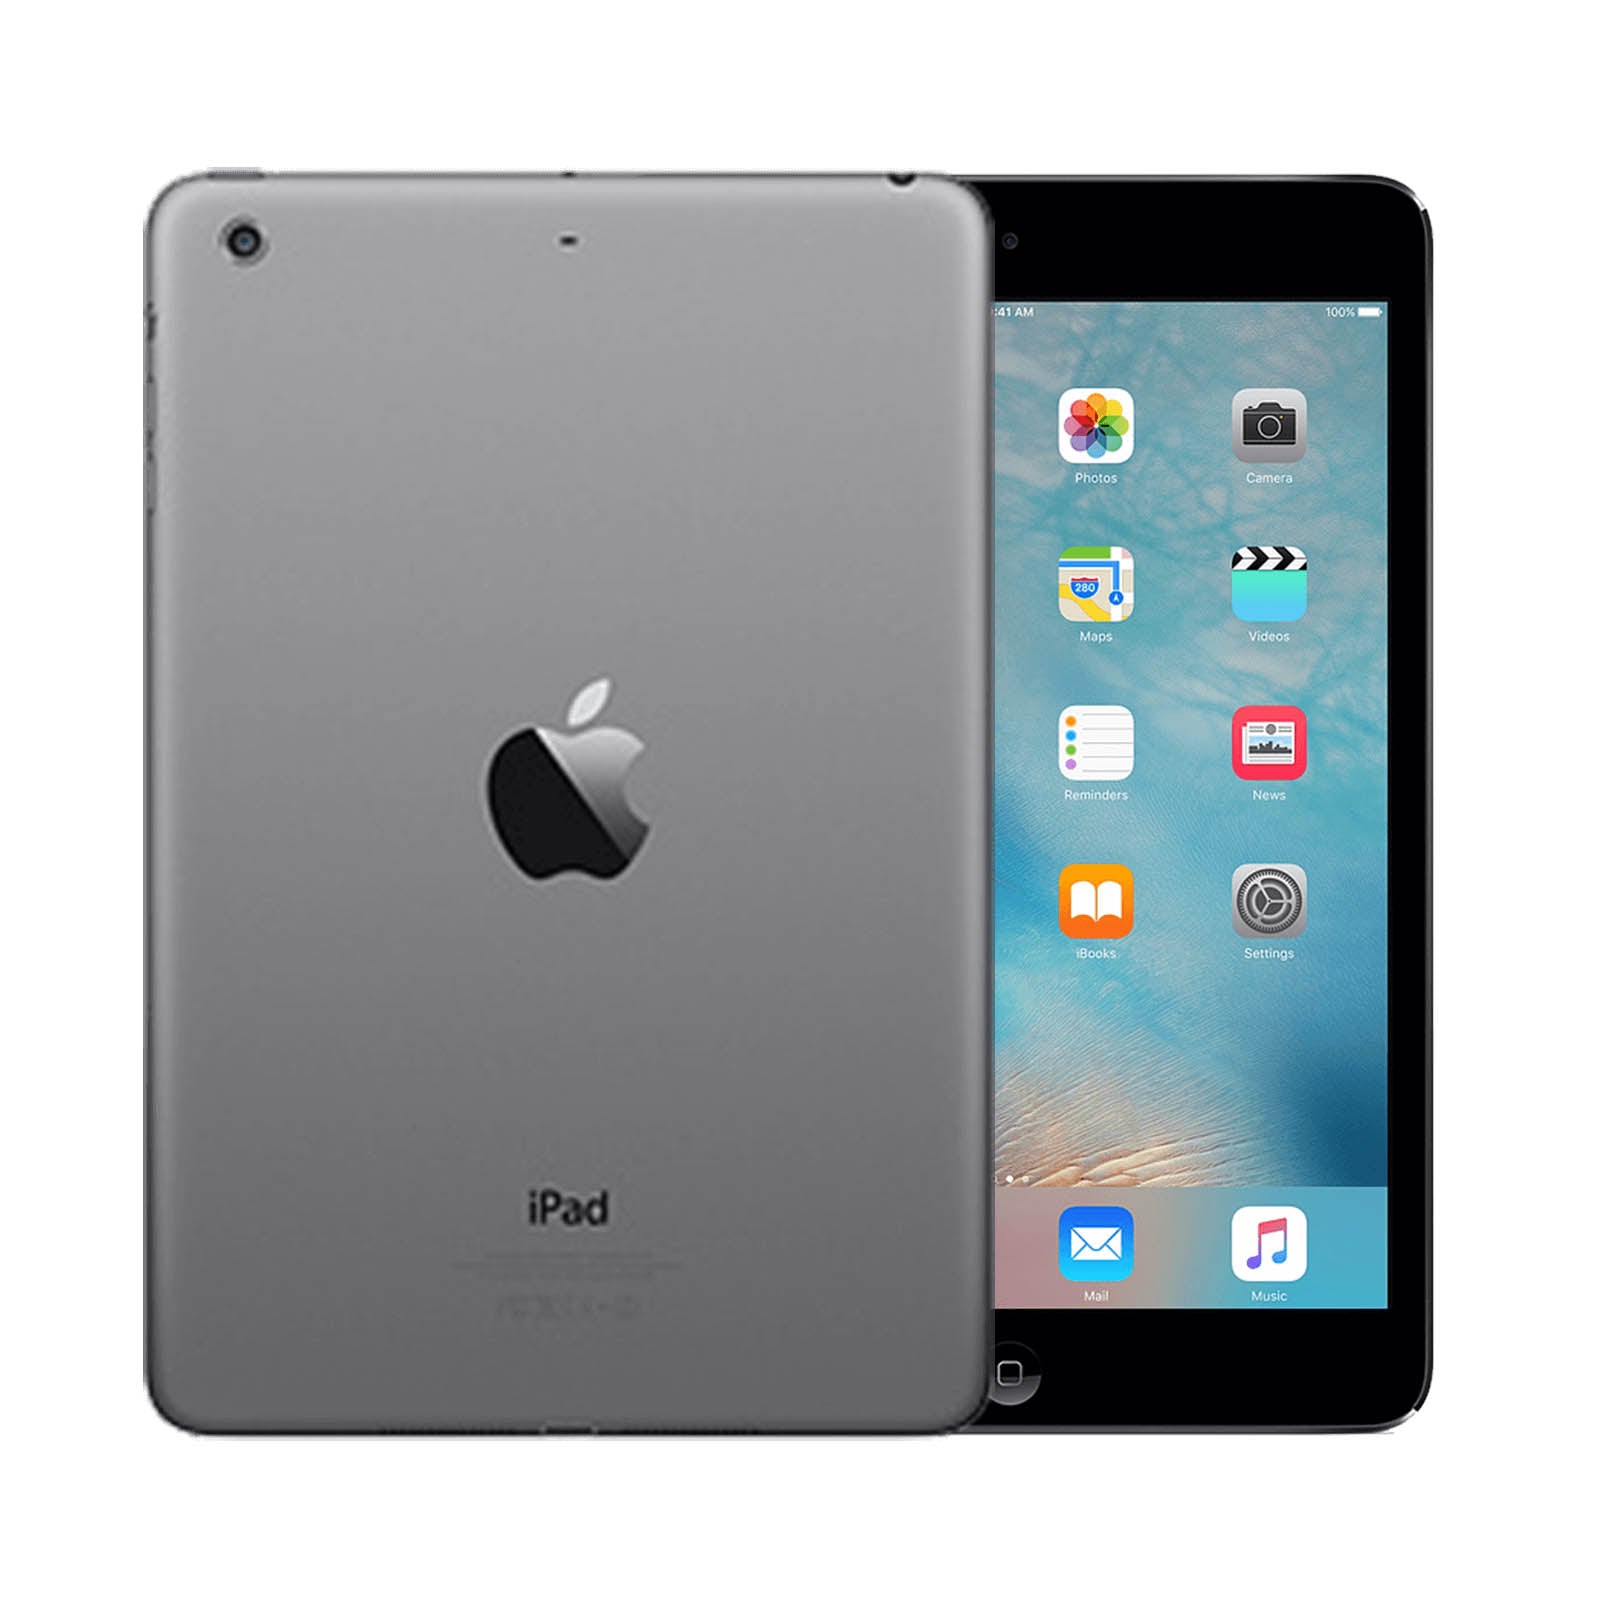 Apple iPad mini 2 32GB Black Very Good - Unlocked